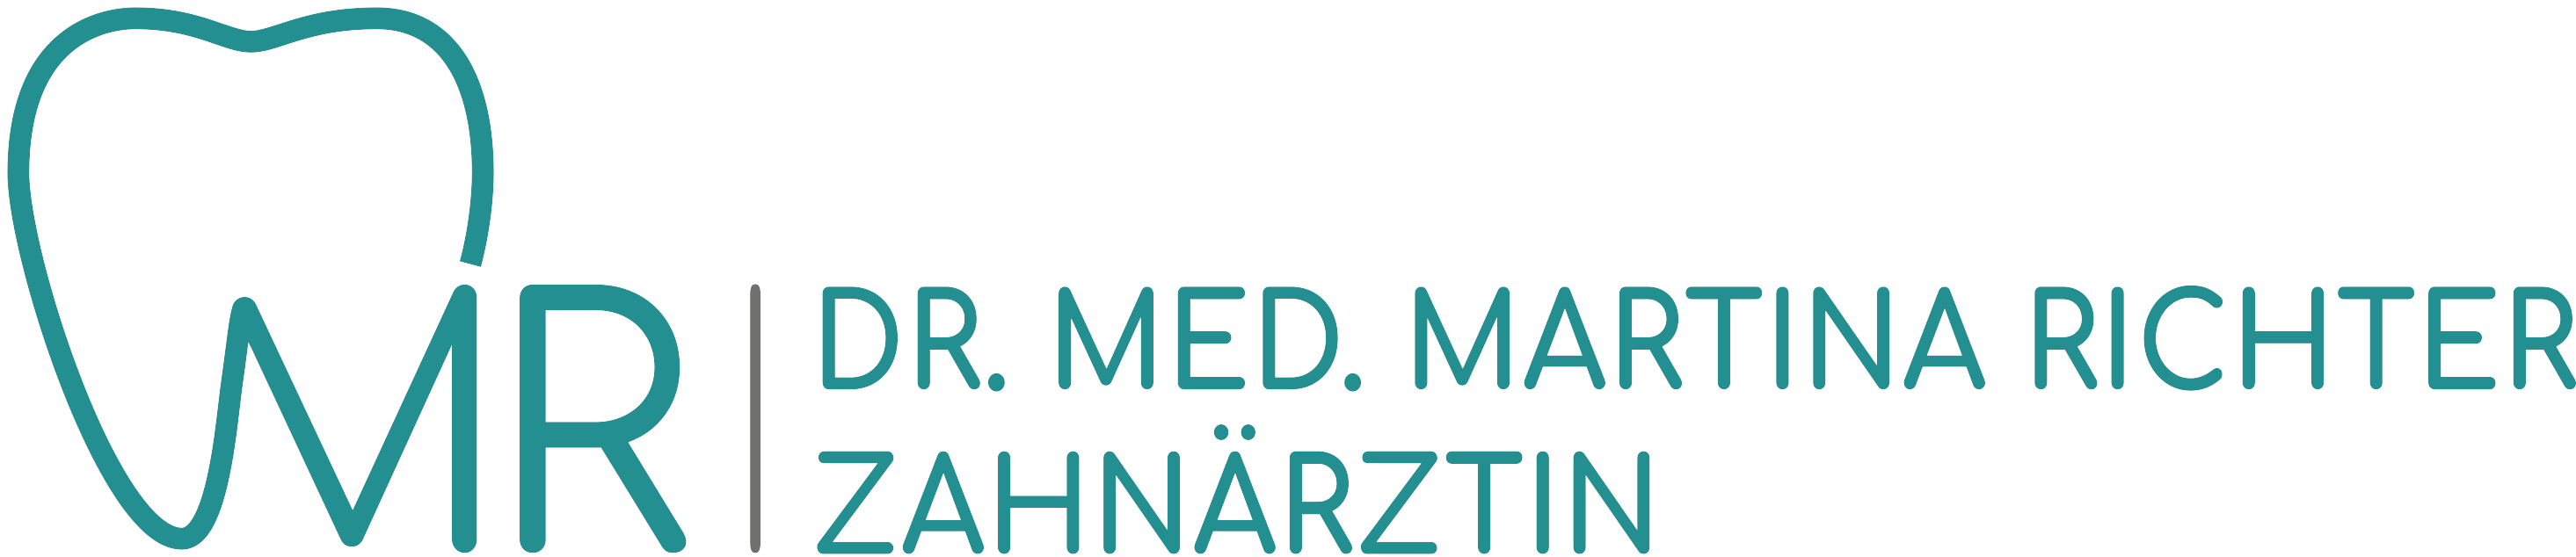 Logo Zahnarztpraxis Dr.med. Martina Richter